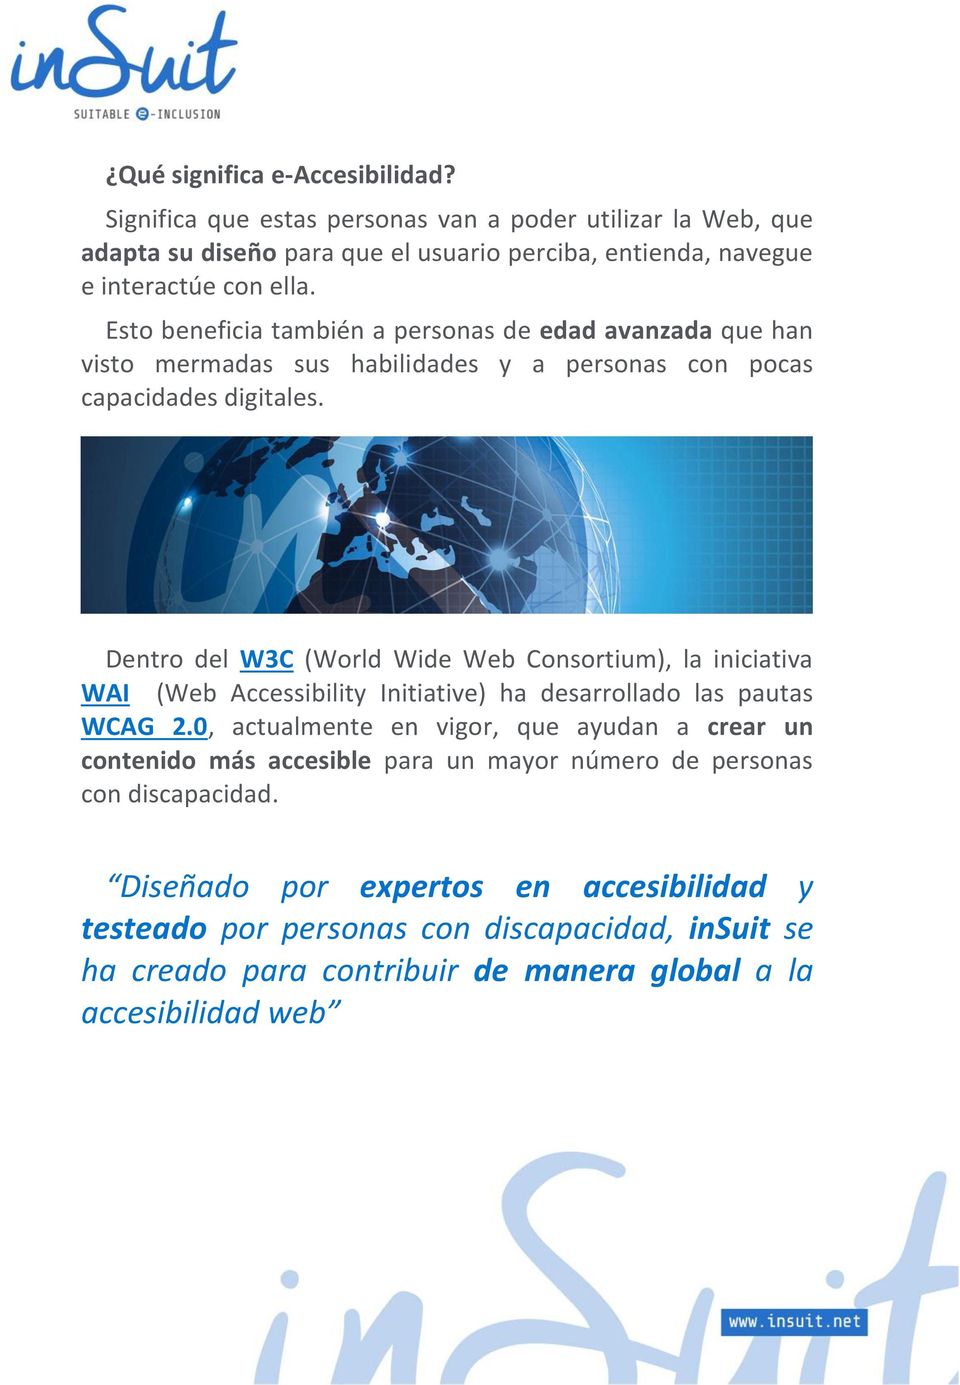 Dentro del W3C (World Wide Web Consortium), la iniciativa WAI (Web Accessibility Initiative) ha desarrollado las pautas WCAG 2.